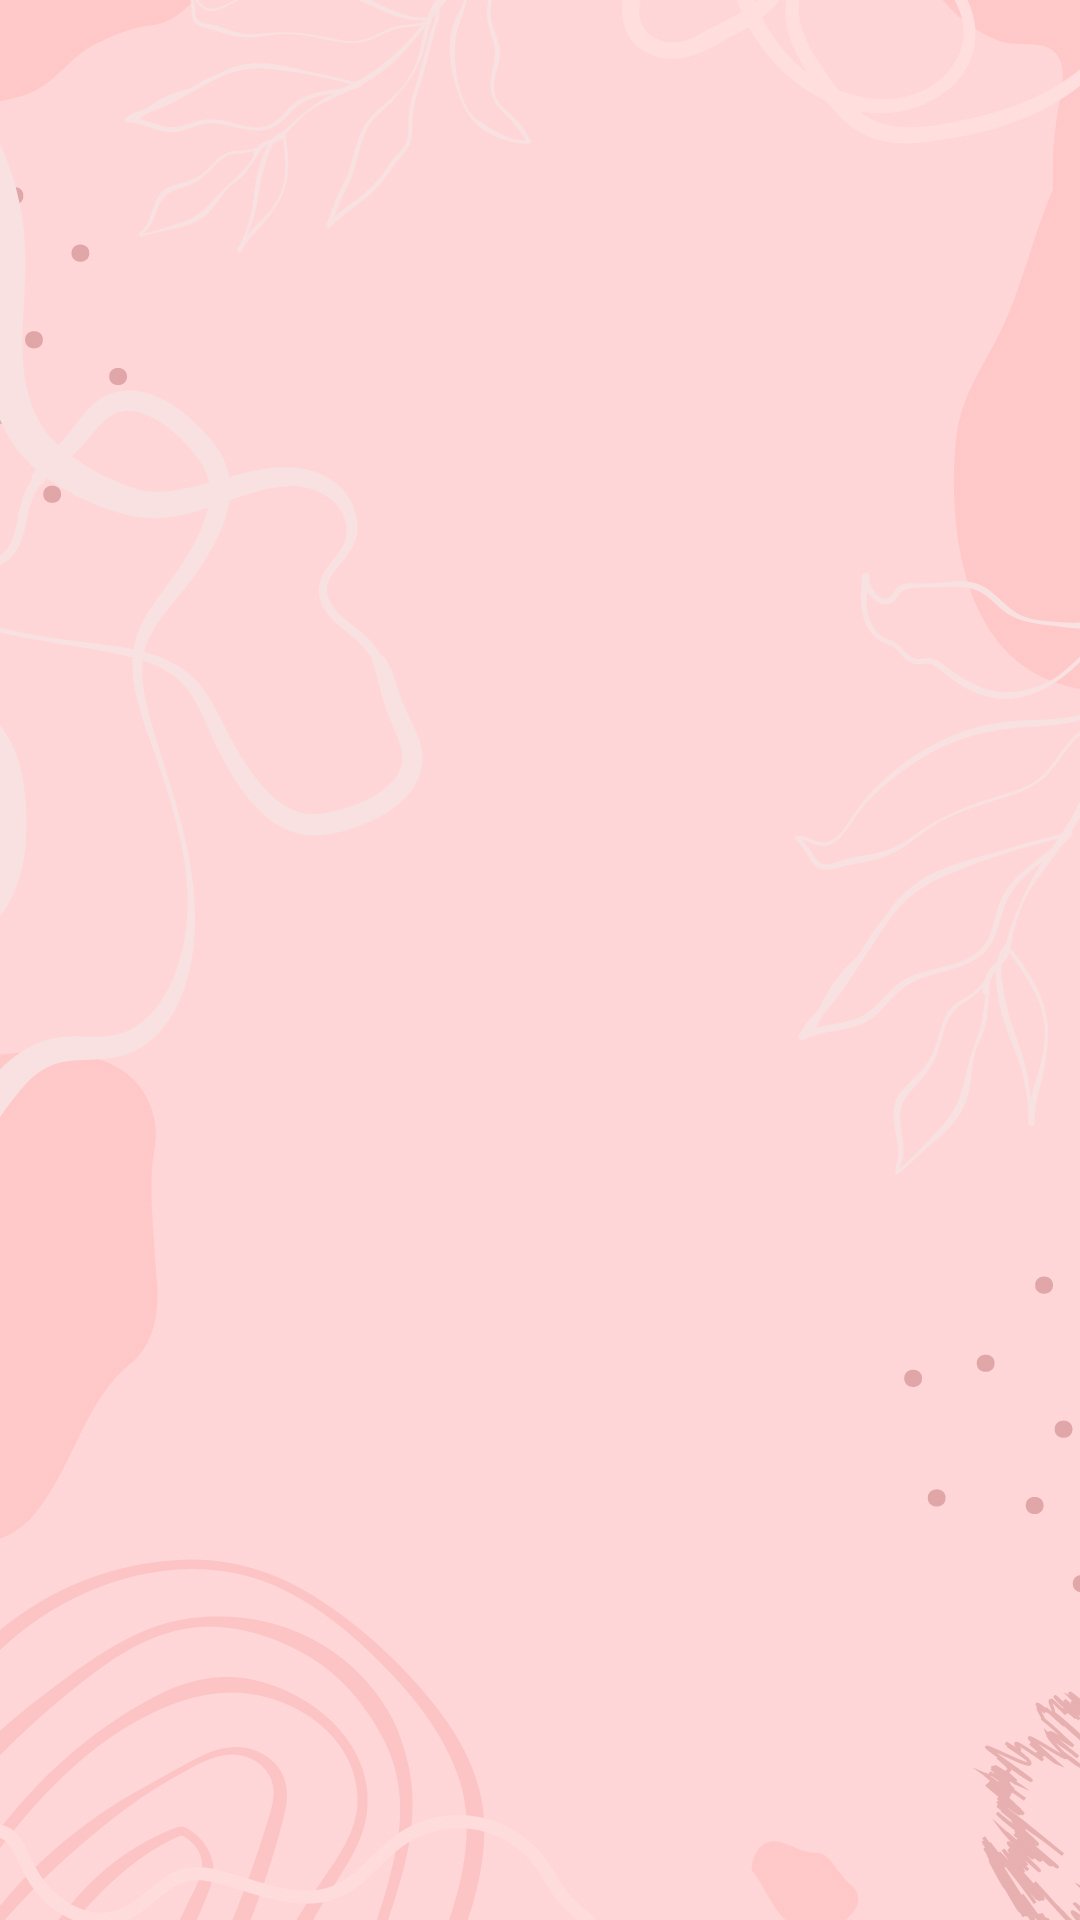 Free Pastel Pink Floral Background - EPS, Illustrator, JPG, SVG ...